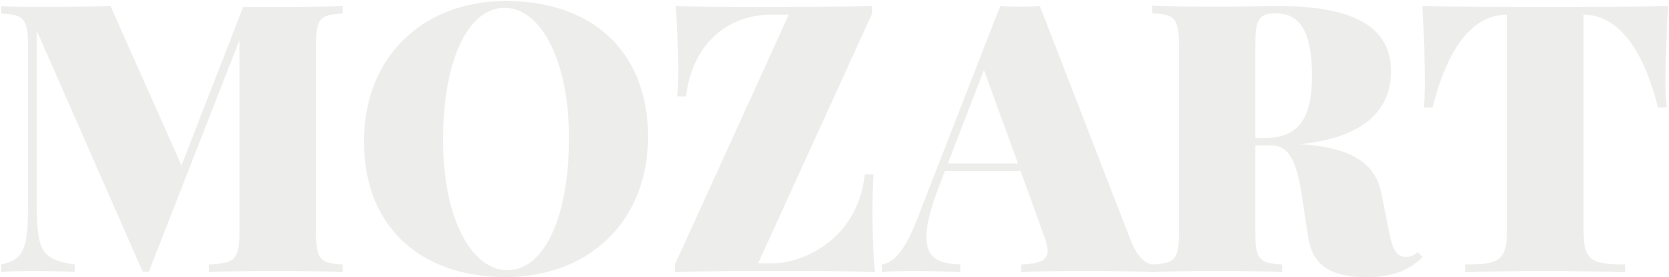 Mozart Logo Design PNG